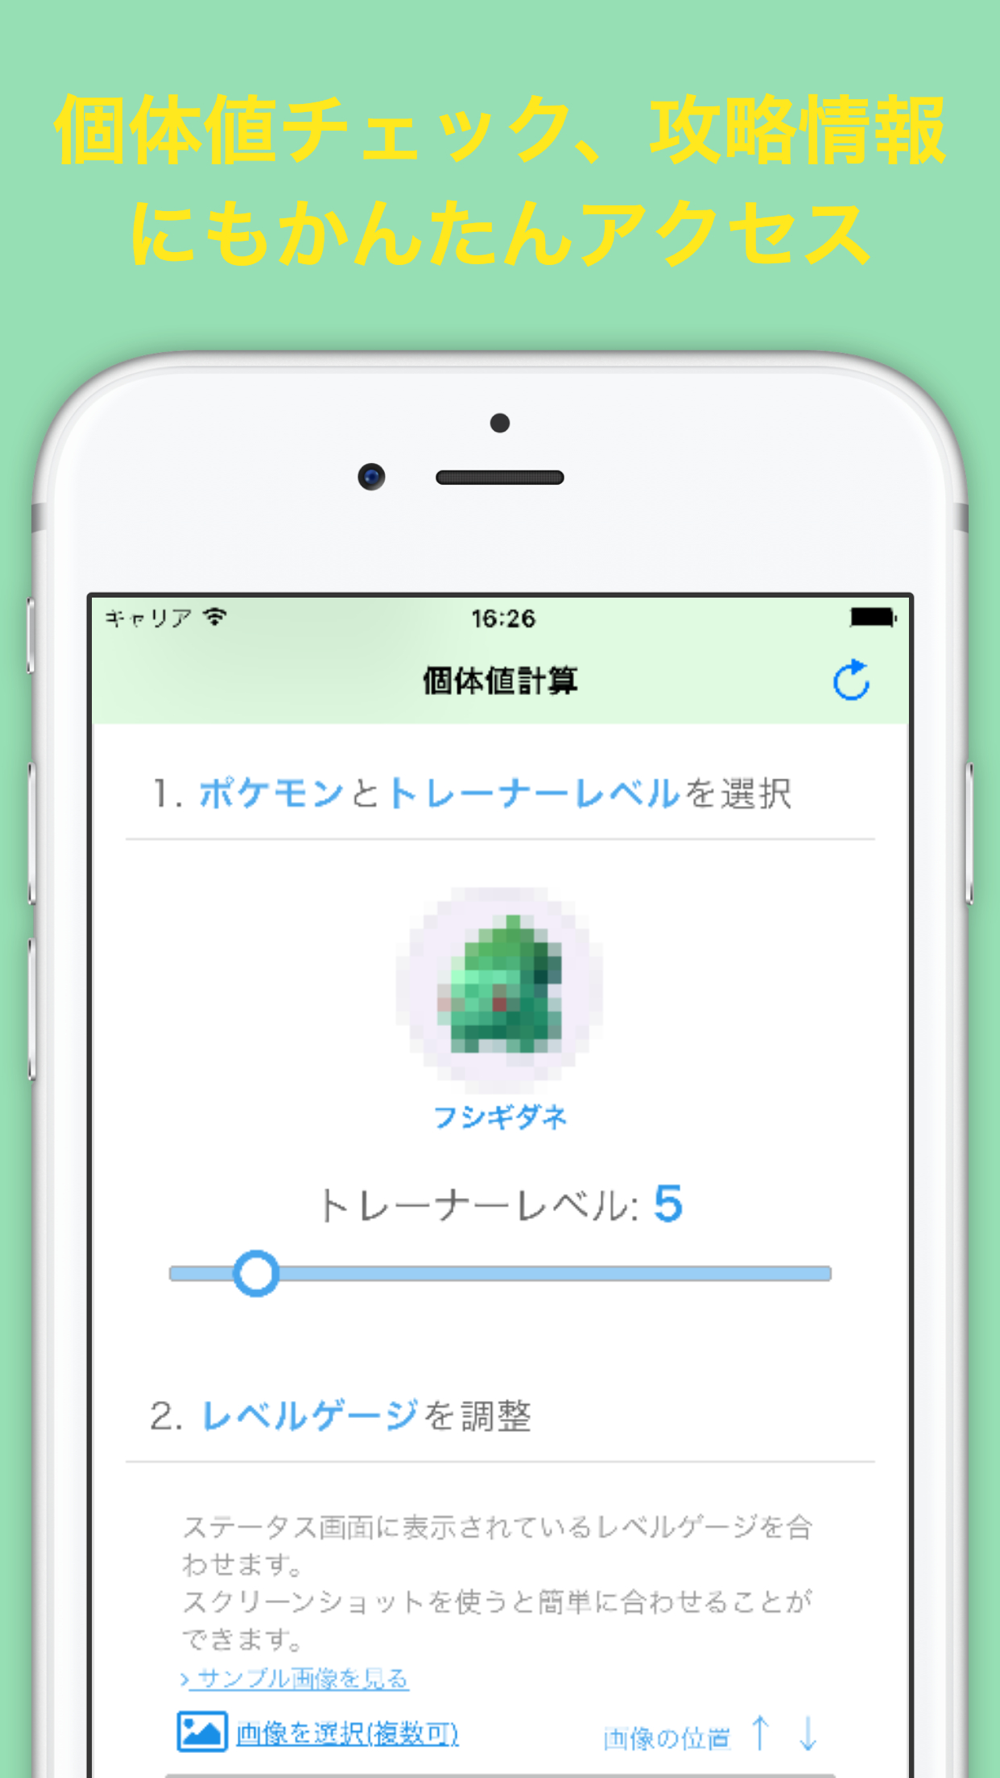 ポケっとツール For ポケモンgo Free Download App For Iphone Steprimo Com